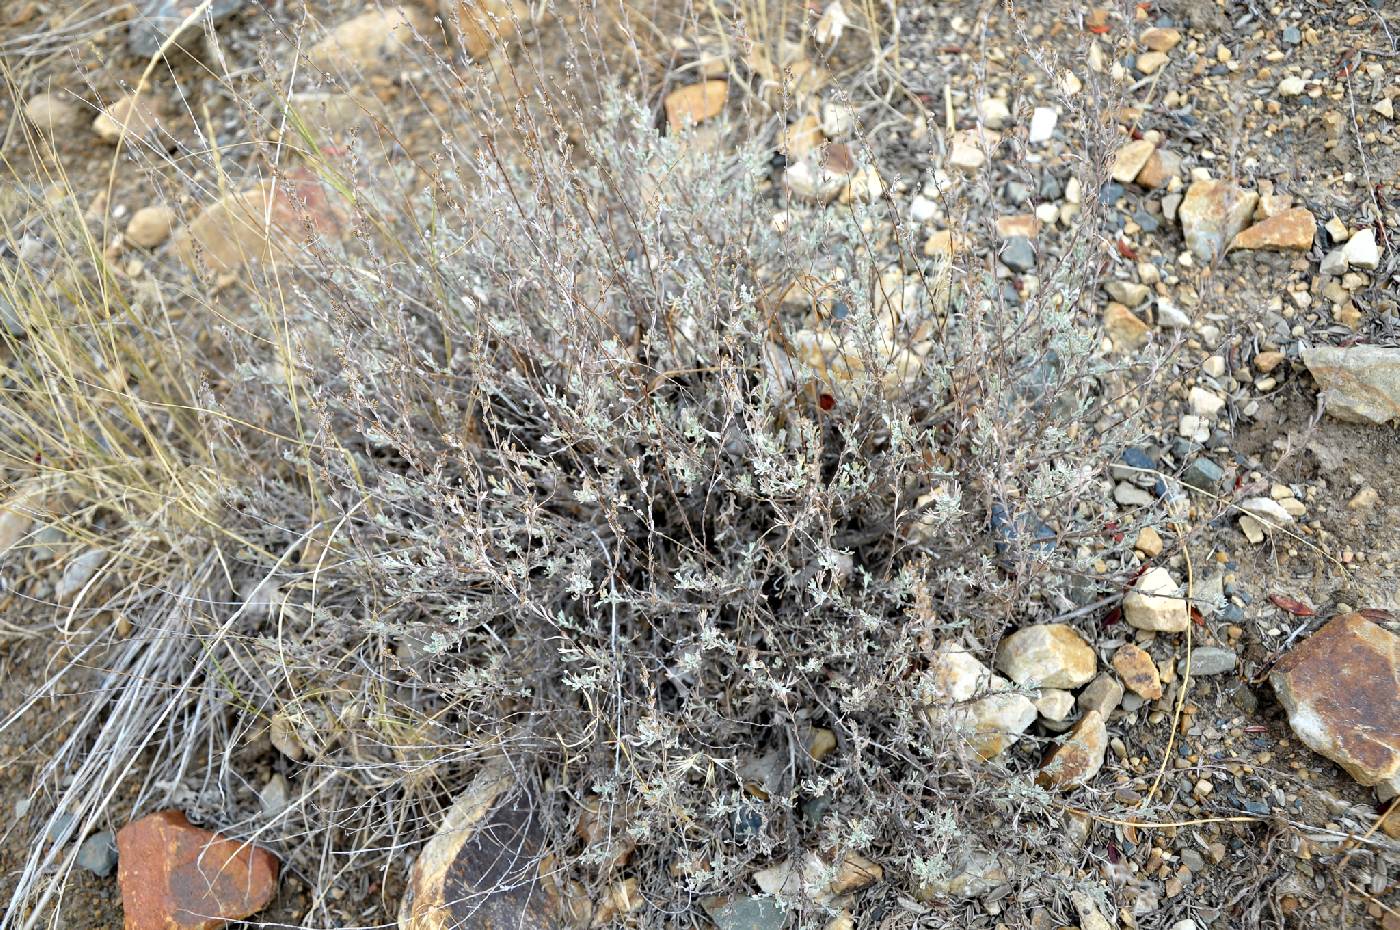 Artemisia arbuscula image